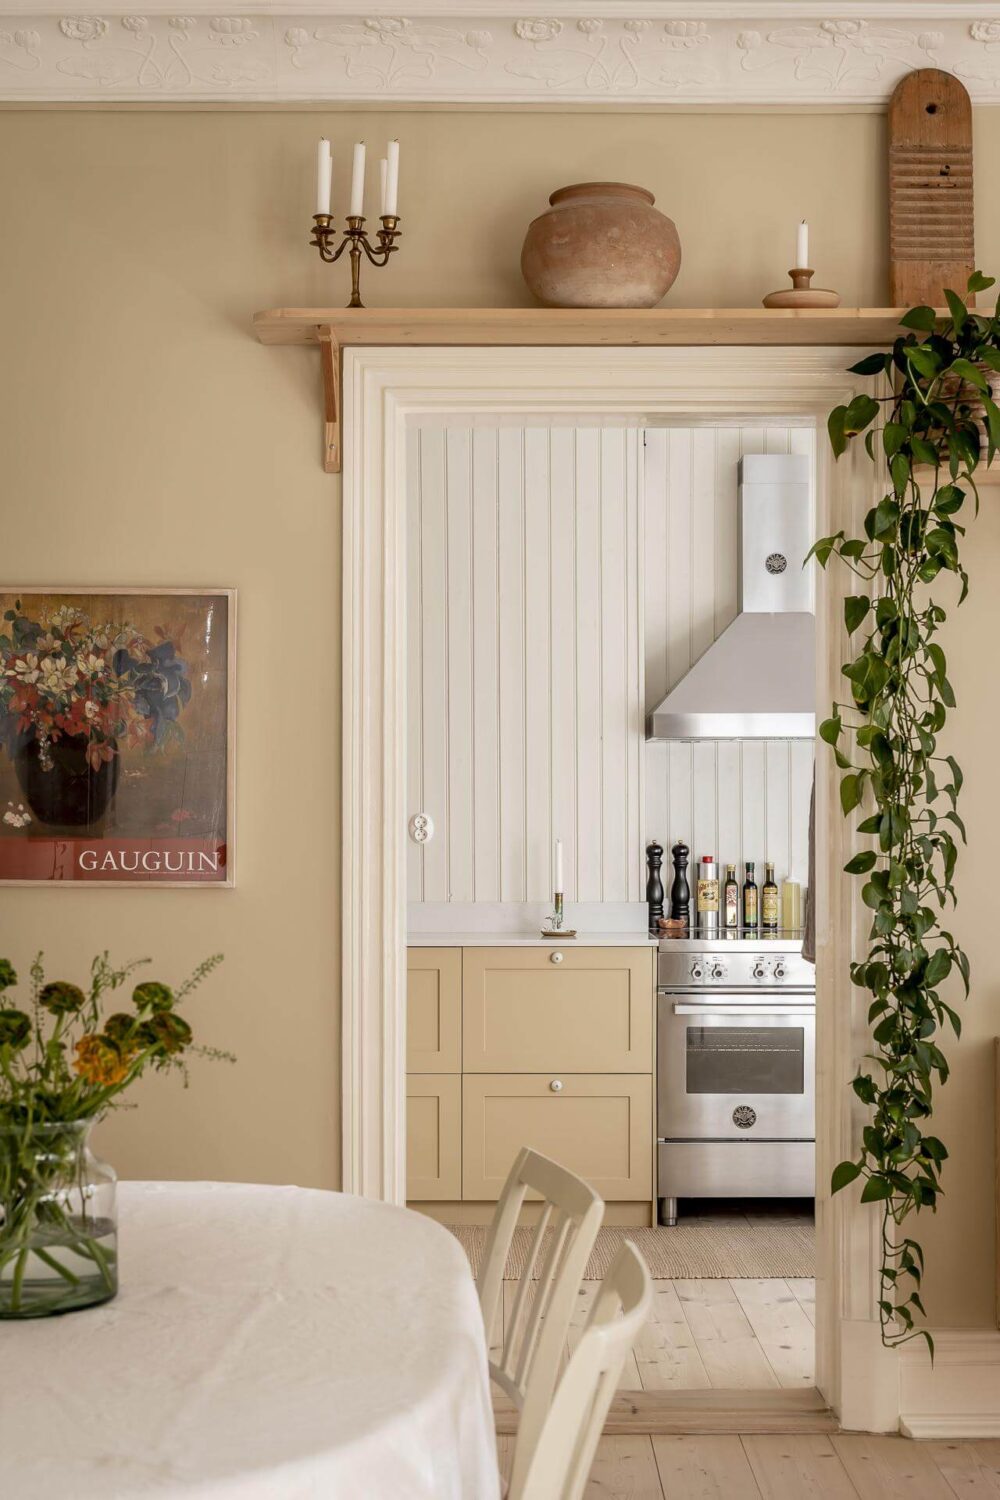 beige-walls-wooden-shelf-above-door-kitchen-nordroom